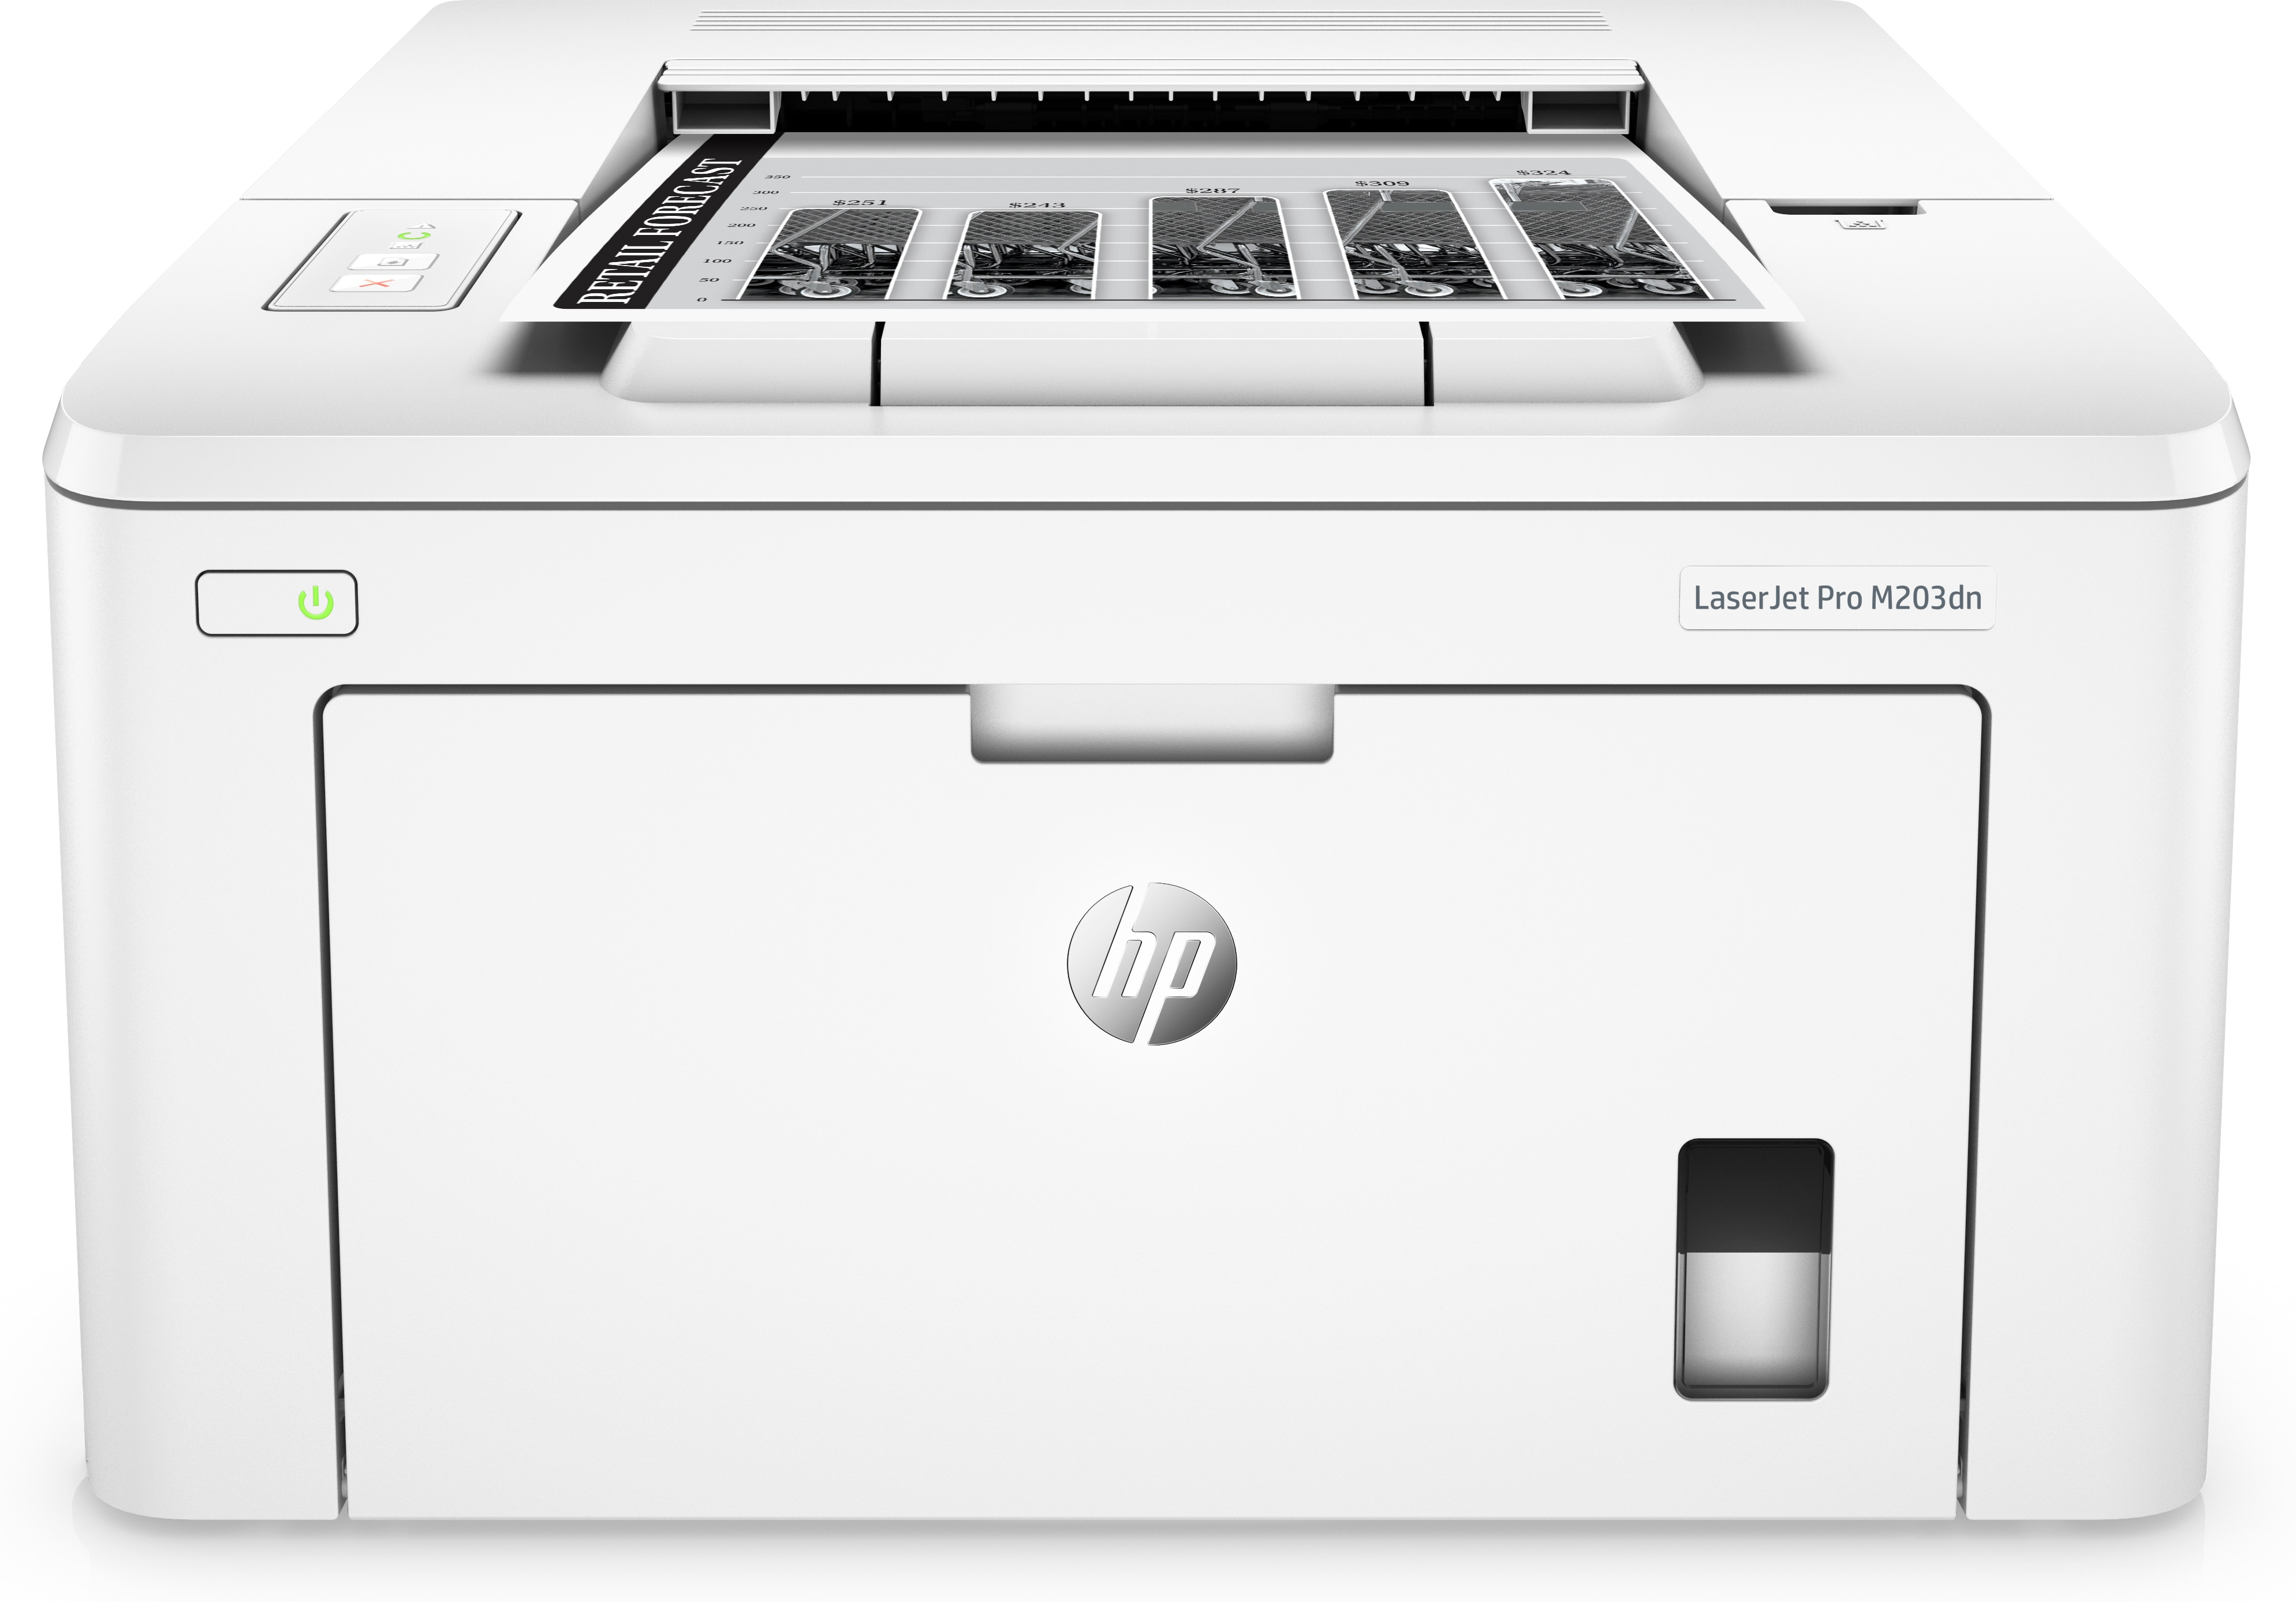 HP HP LaserJet Pro M203dn printer, Zwart-wit, Printer voor Thuis en thuiskantoor, Print, Printen vanaf telefoon of tablet; Dubbelzijdig printen; JetIntelligence-cartridge